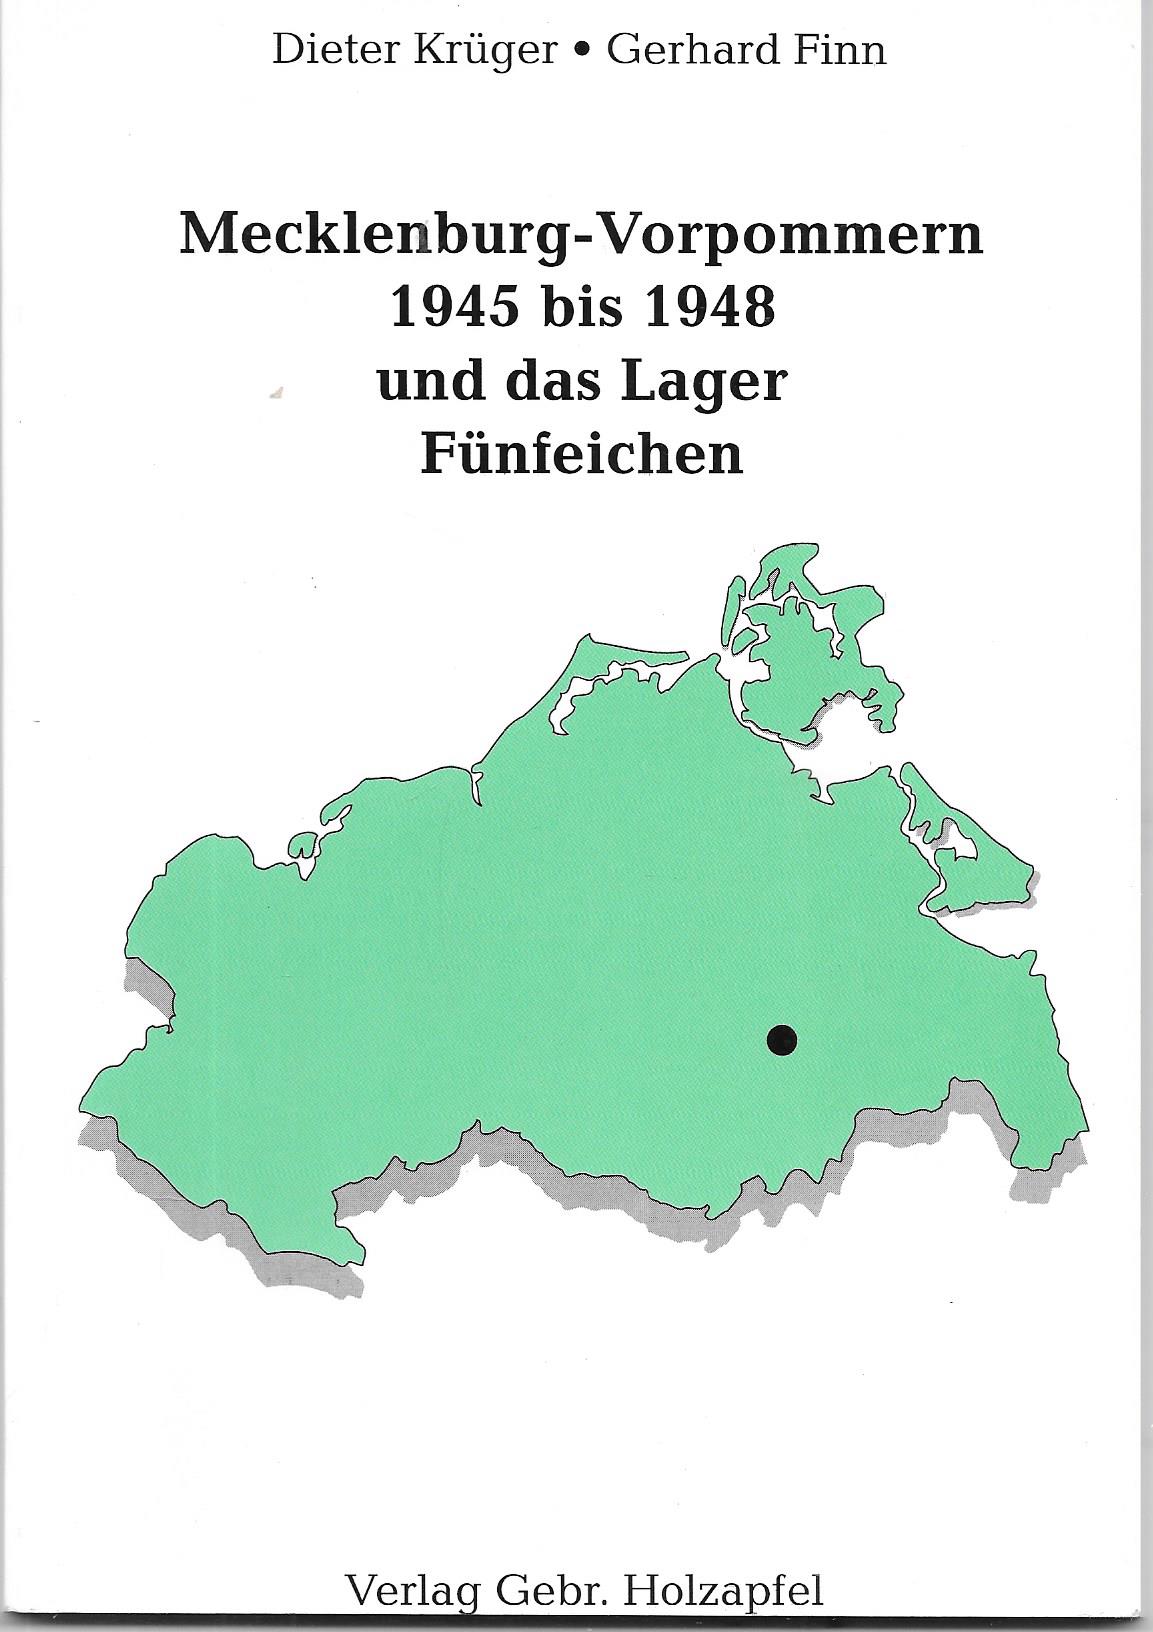 Mecklenburg-Vorpommern 1945 bis 1948 und das Lager Fünfeichen - Dieter Krüger, Gerhard Finn